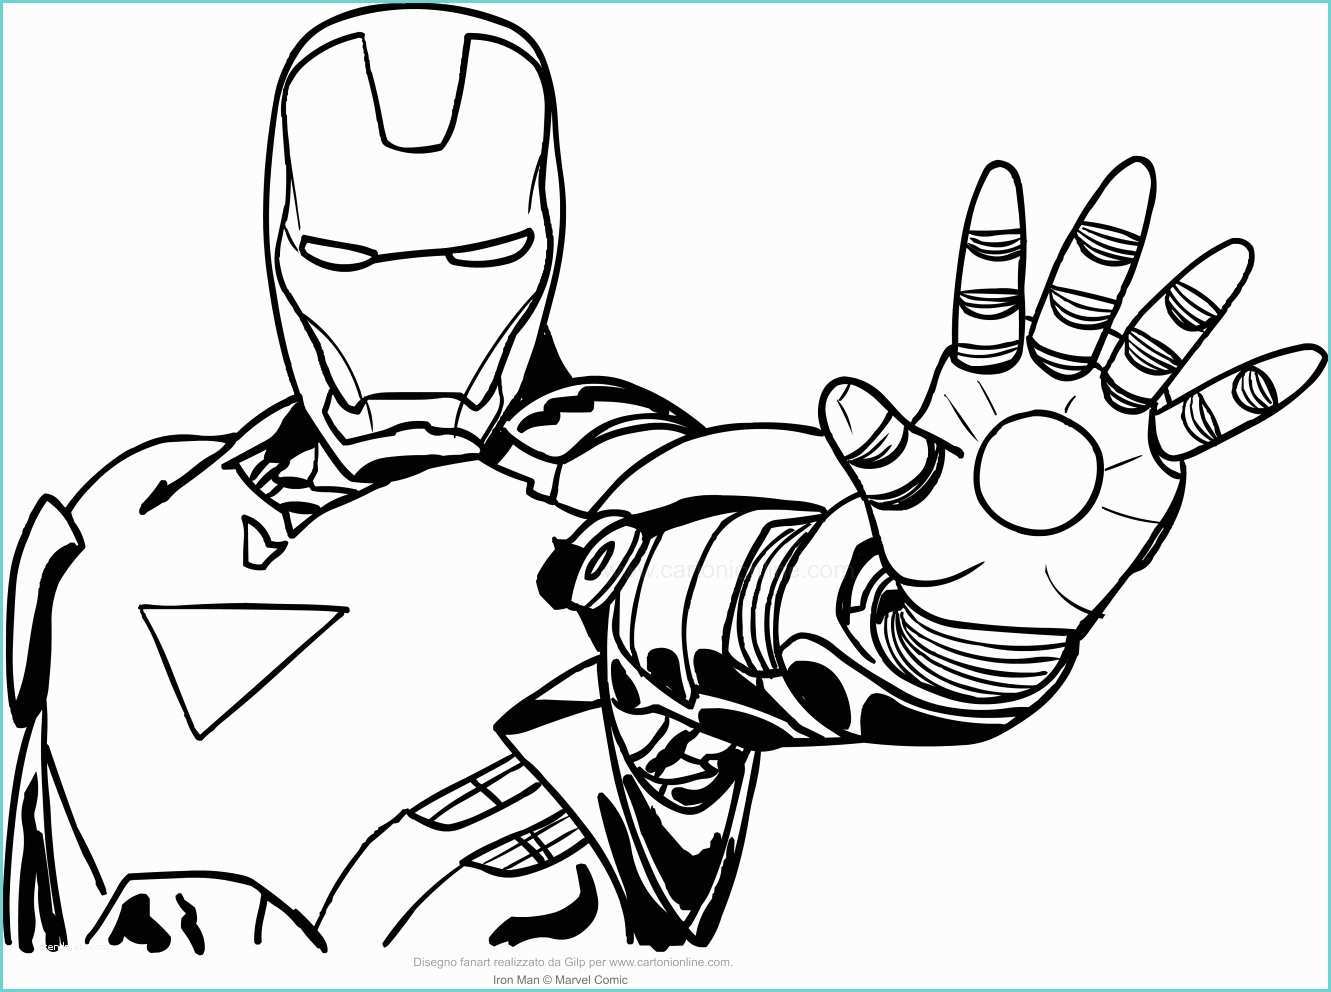 Immagini Di Spiderman Da Disegnare Disegno Di Iron Man A Mezzo Busto Da Colorare